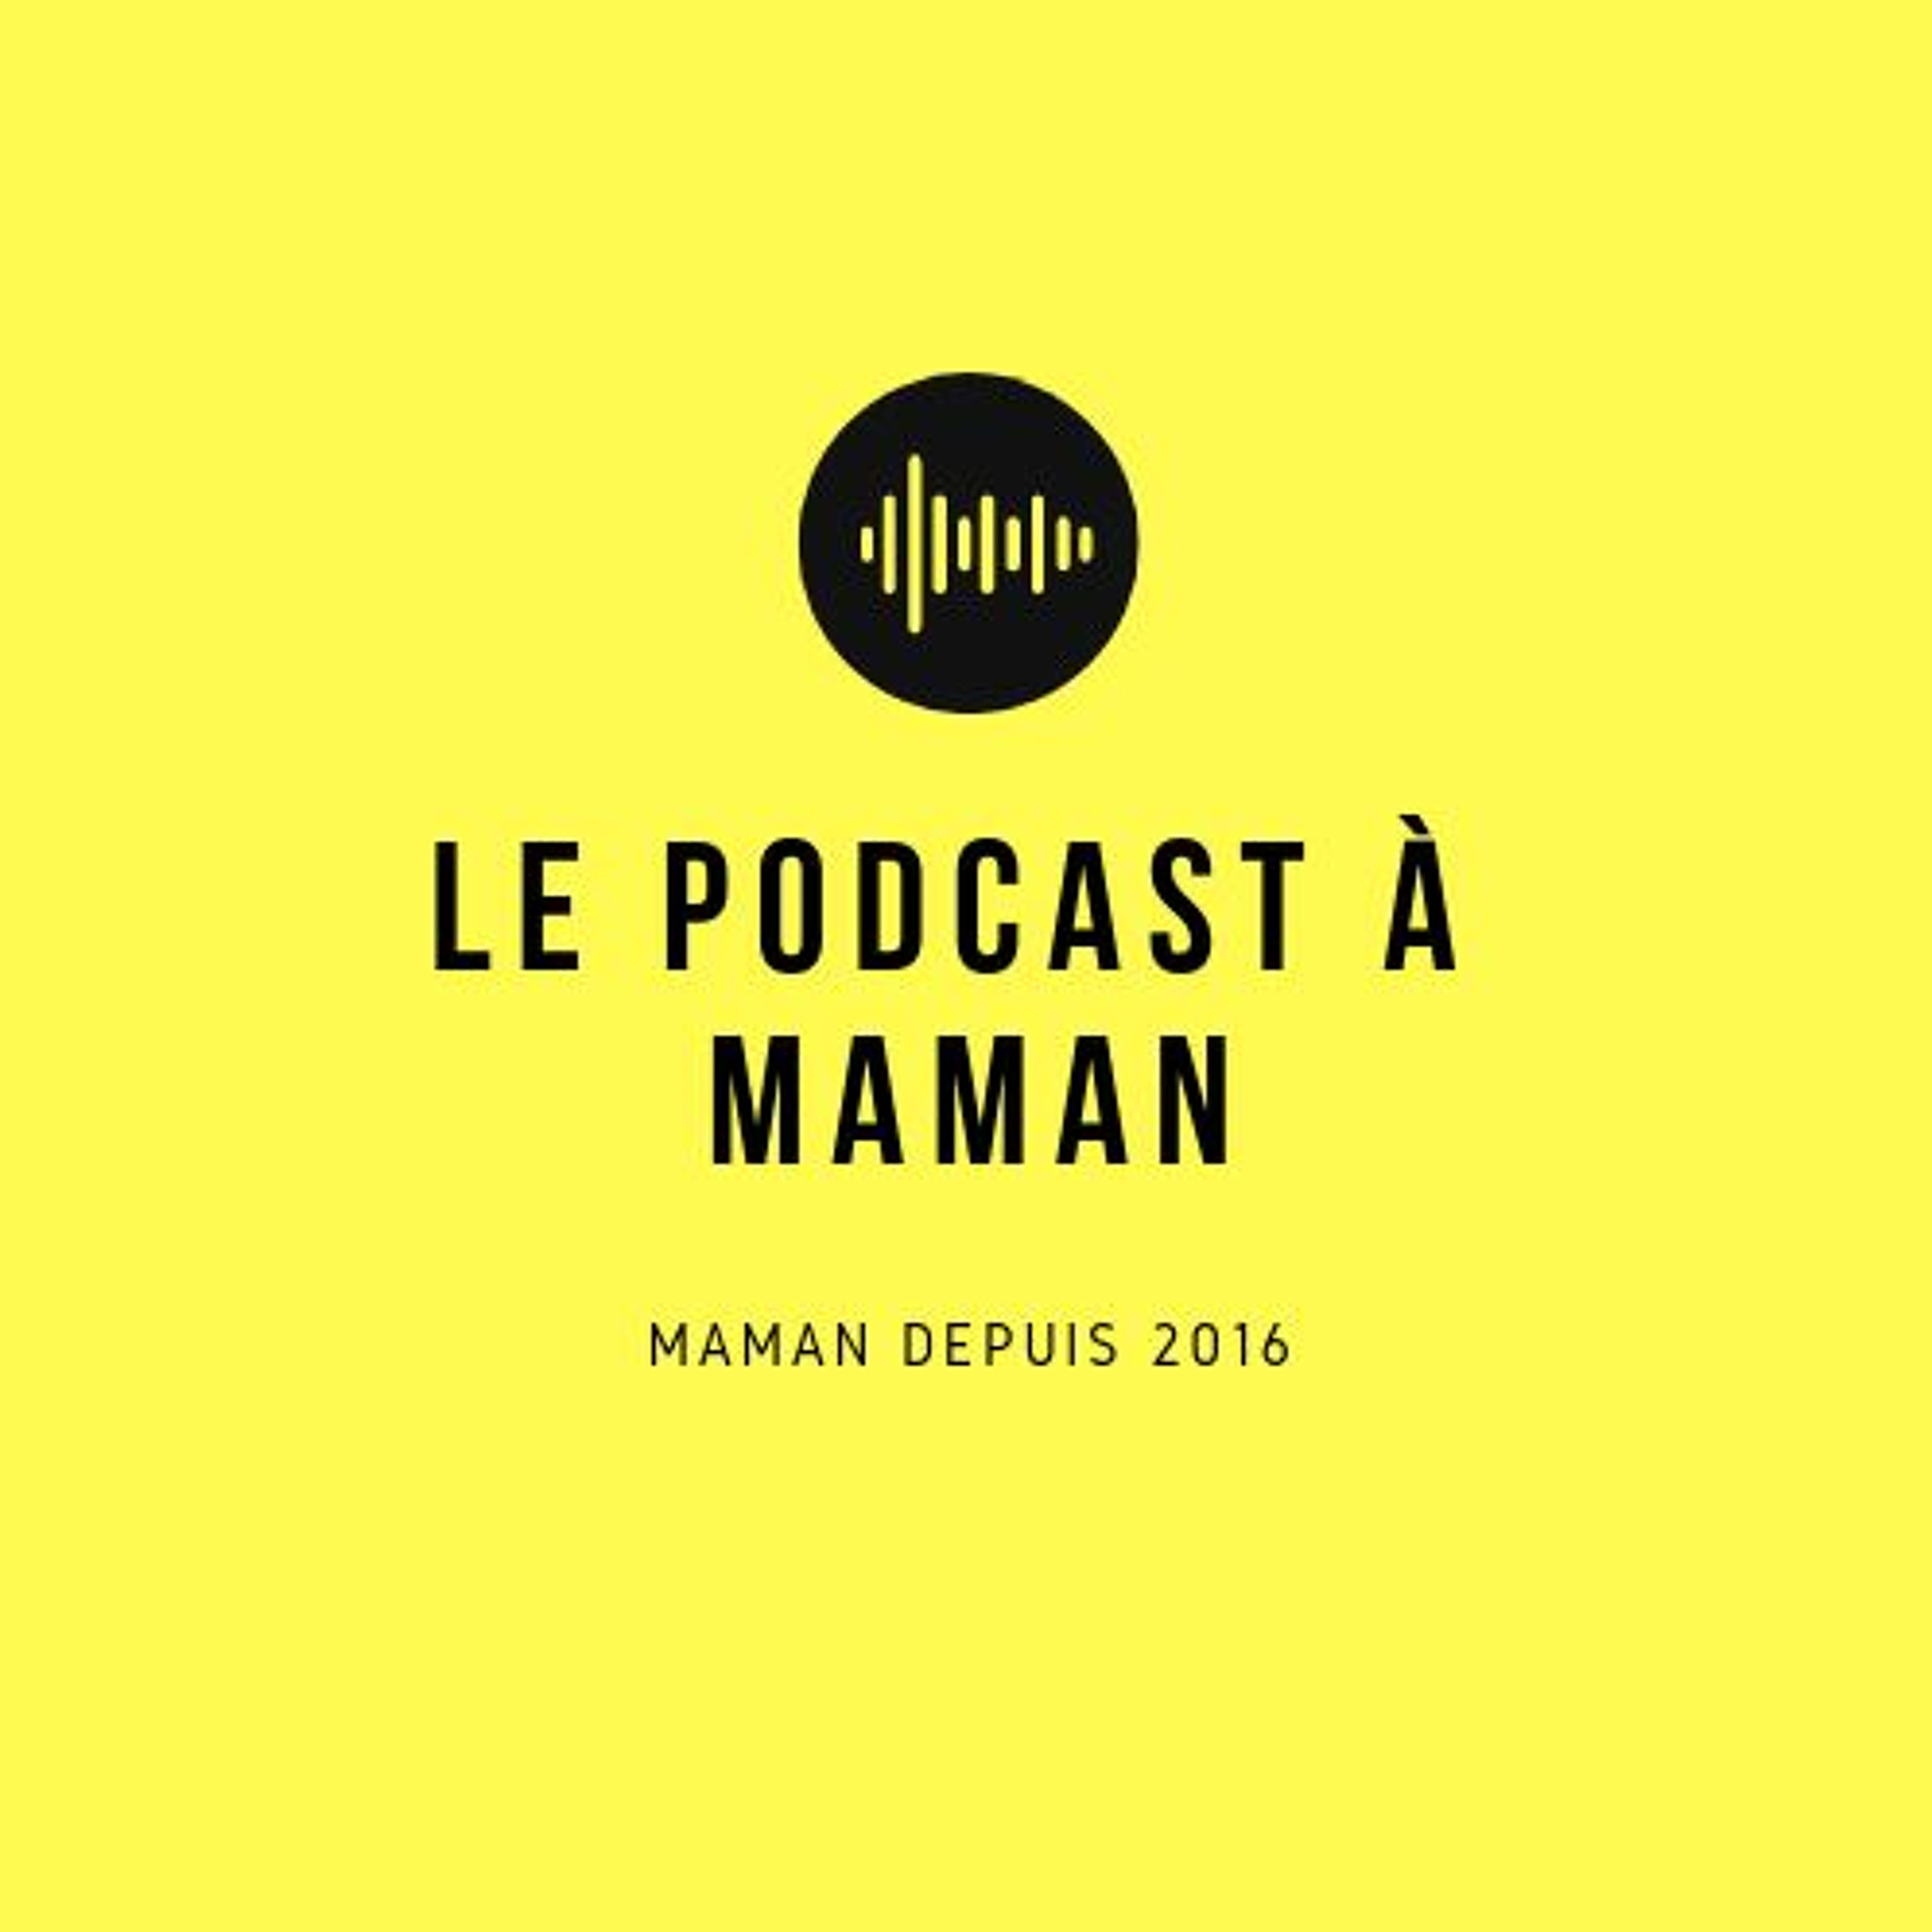 Le podcast à maman, le lancement!